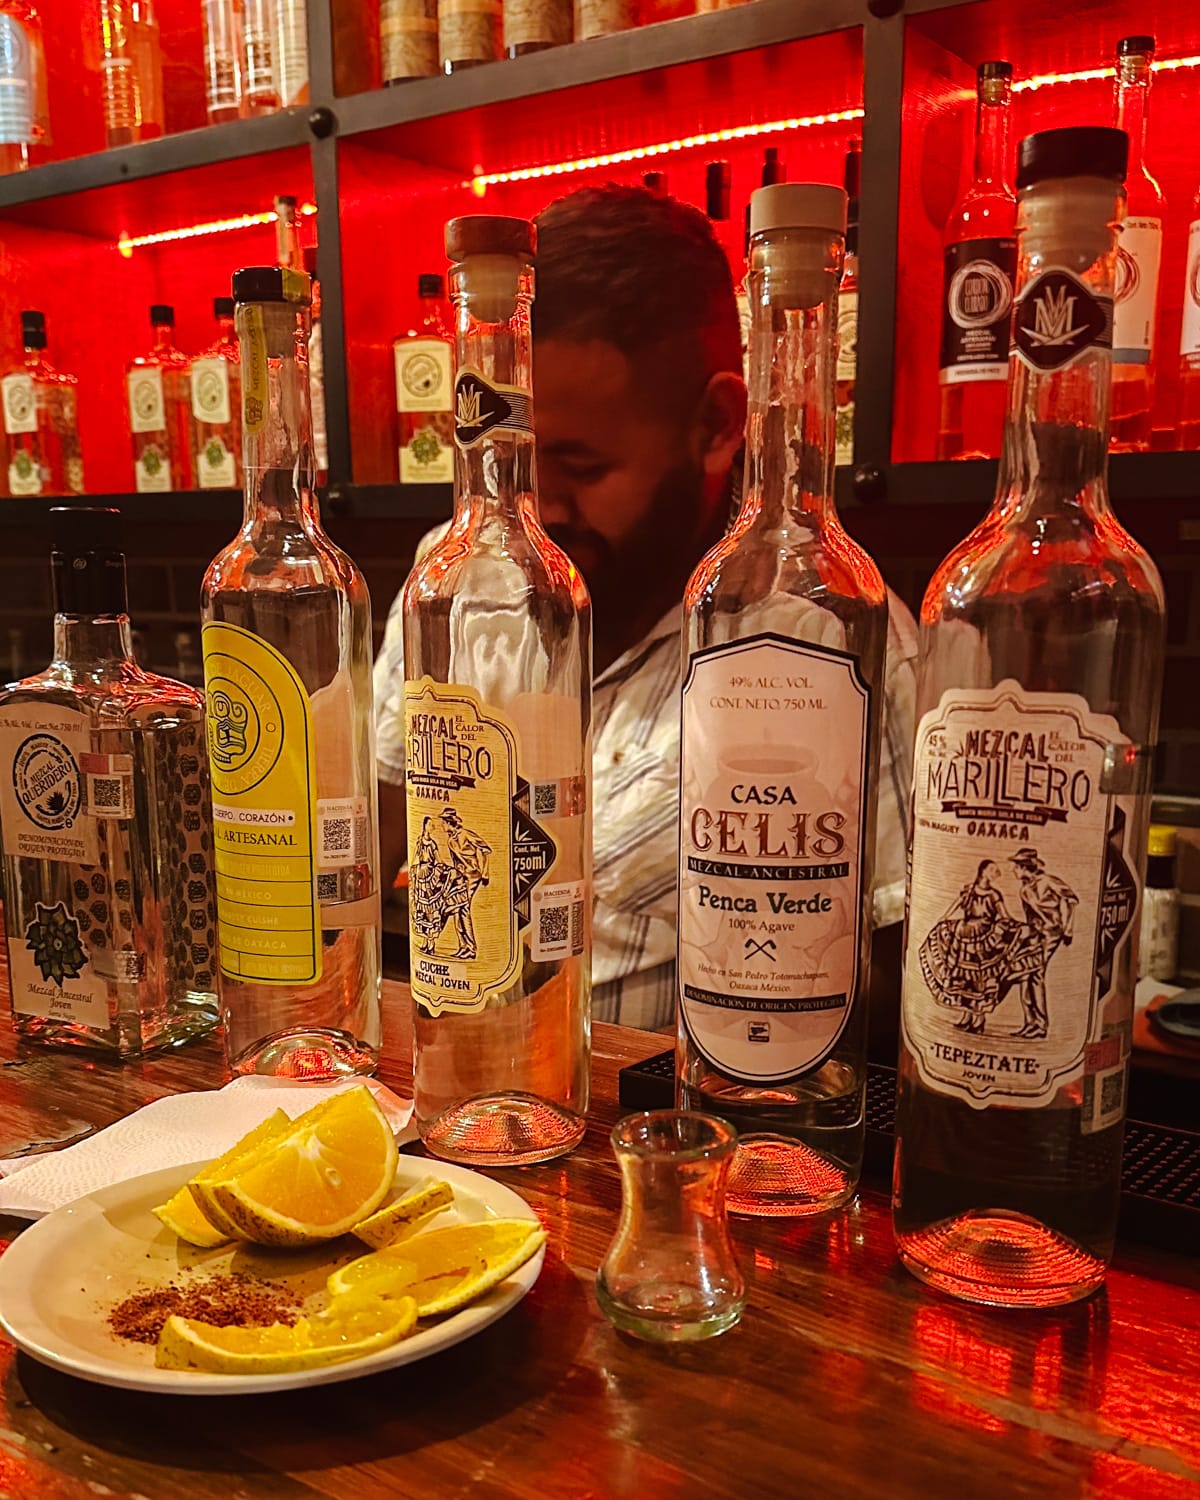 7 Best Bars in Oaxaca City